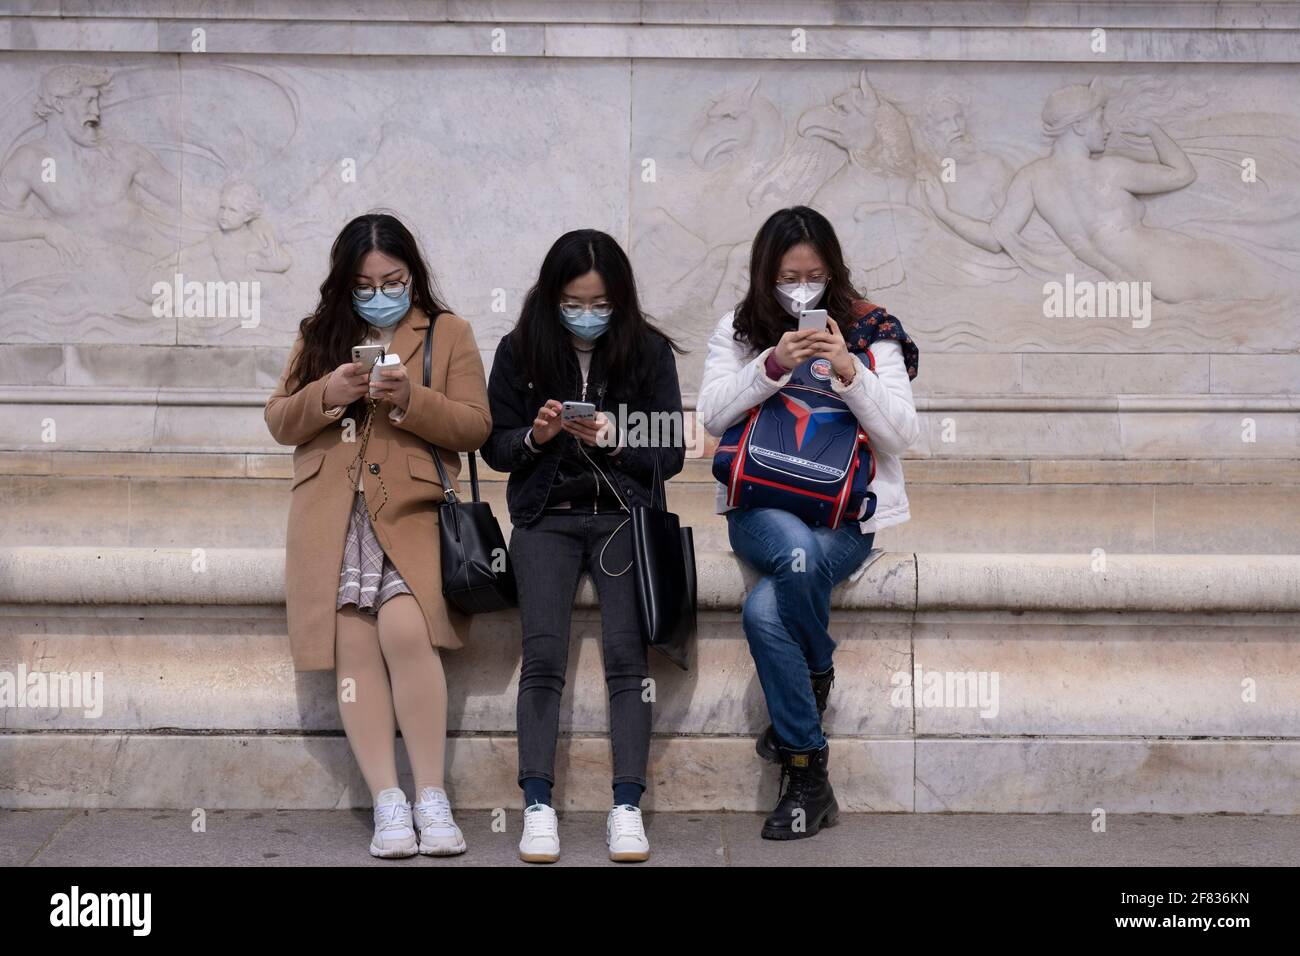 Le jour de l'annonce de la mort du duc d'Édimbourg, trois visiteurs asiatiques au pied du Victoria Memorial, en face du palais de Buckingham, s'arrêtent pour vérifier et envoyer des messages sur leur téléphone, le 9 avril 2021, à Londres, en Angleterre. Banque D'Images